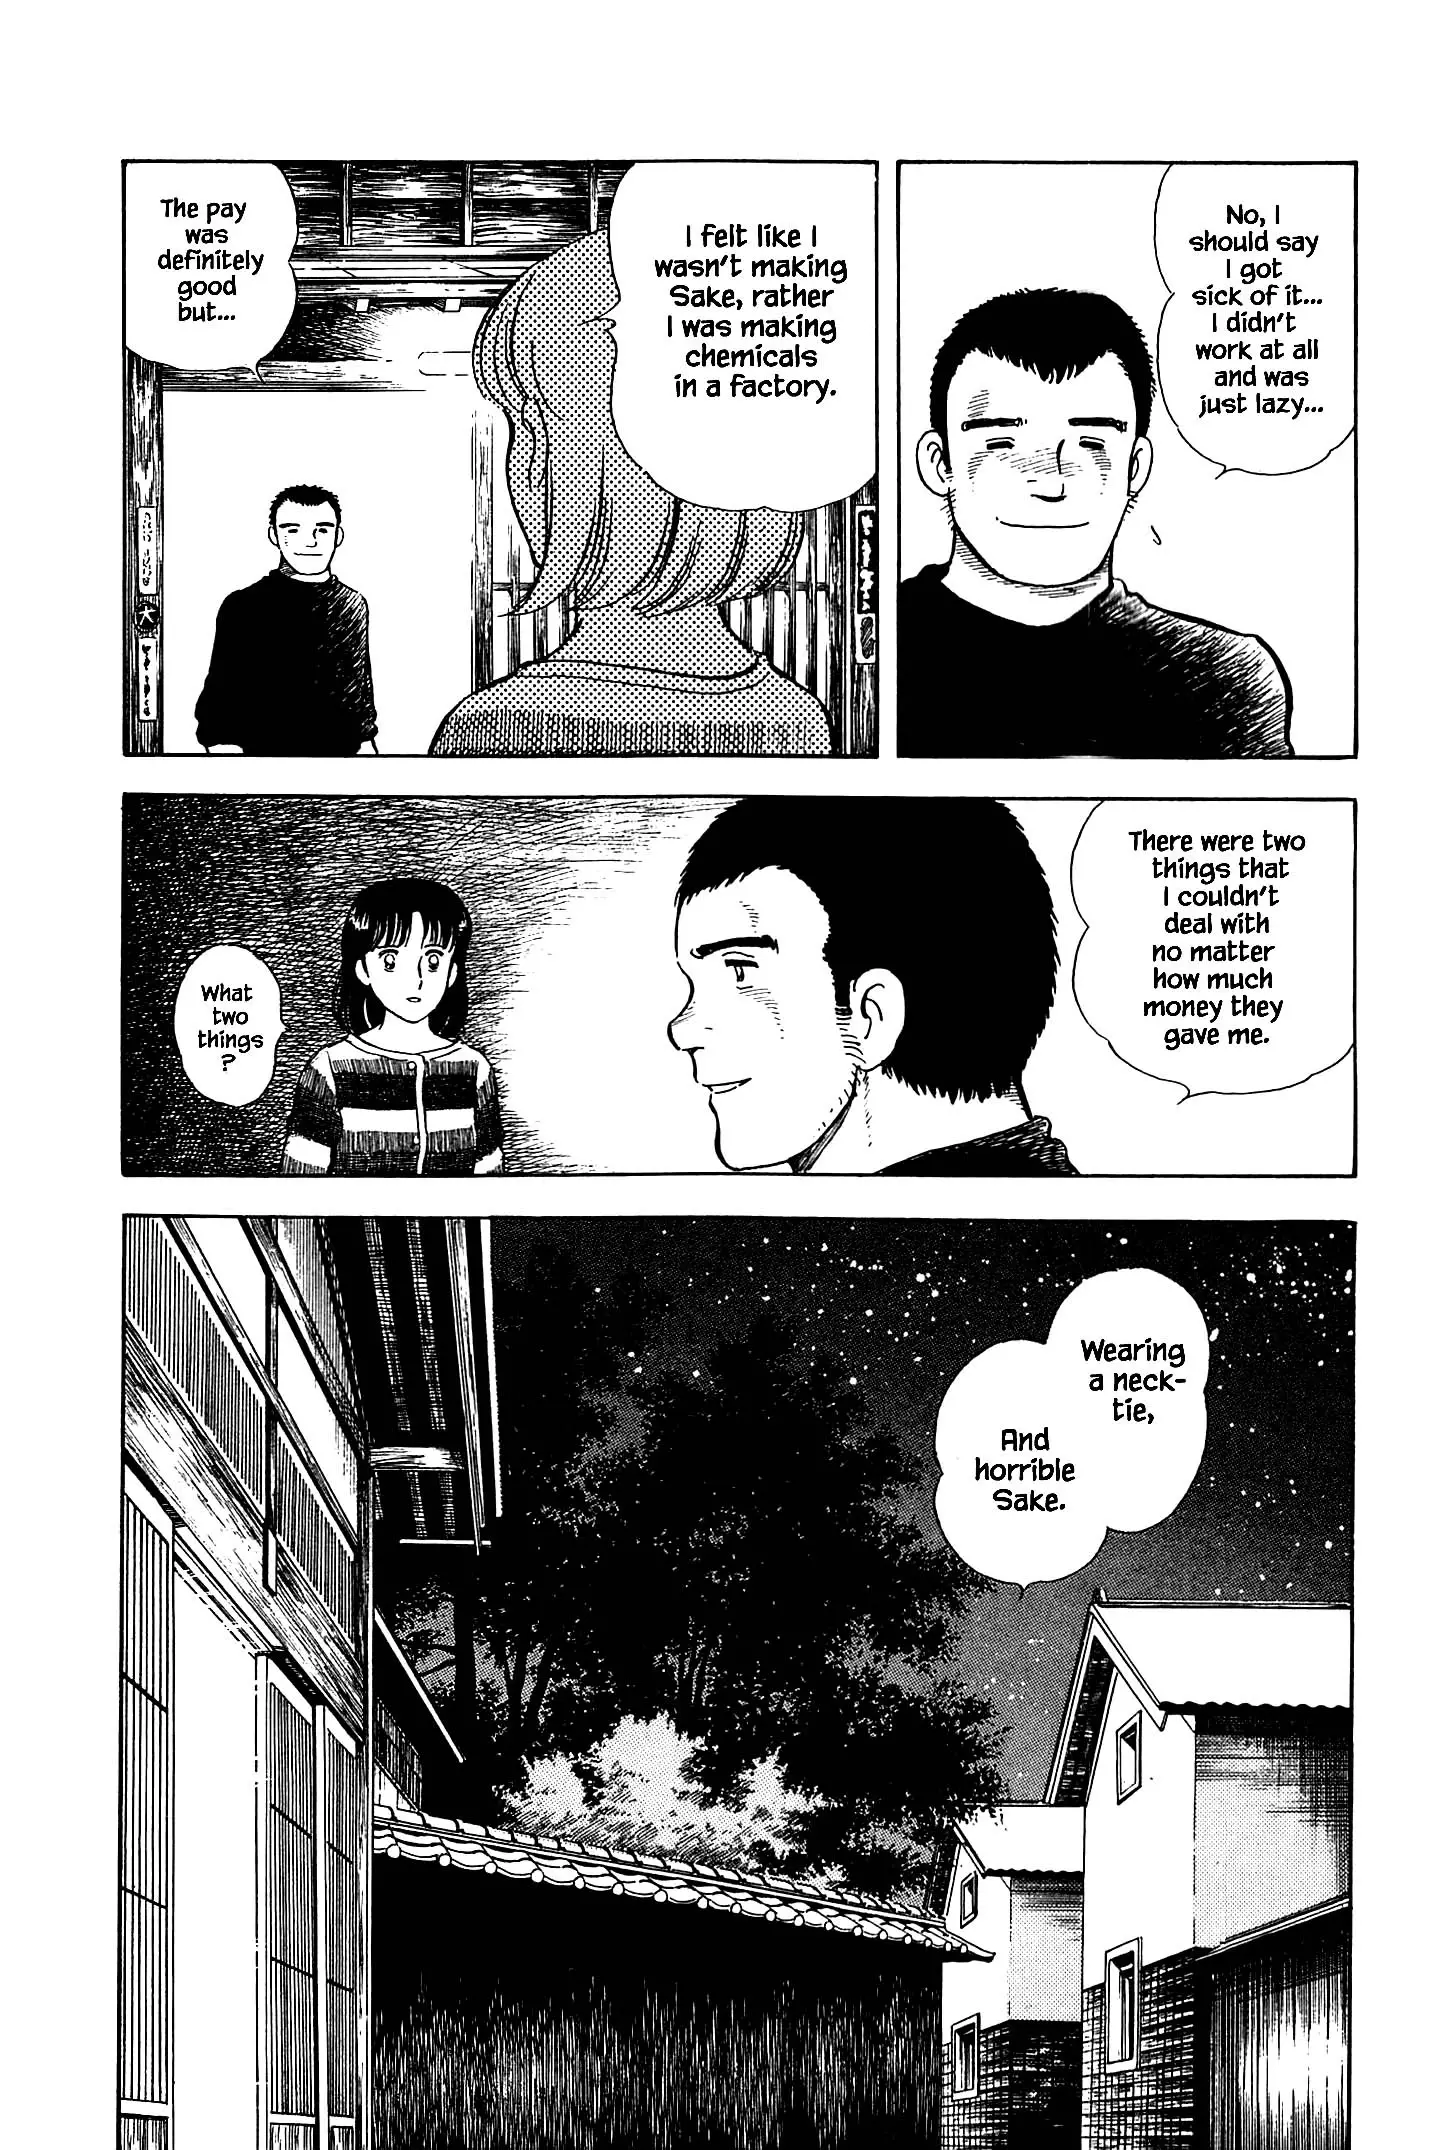 Natsuko's Sake - 48 page 9-9f4f5145